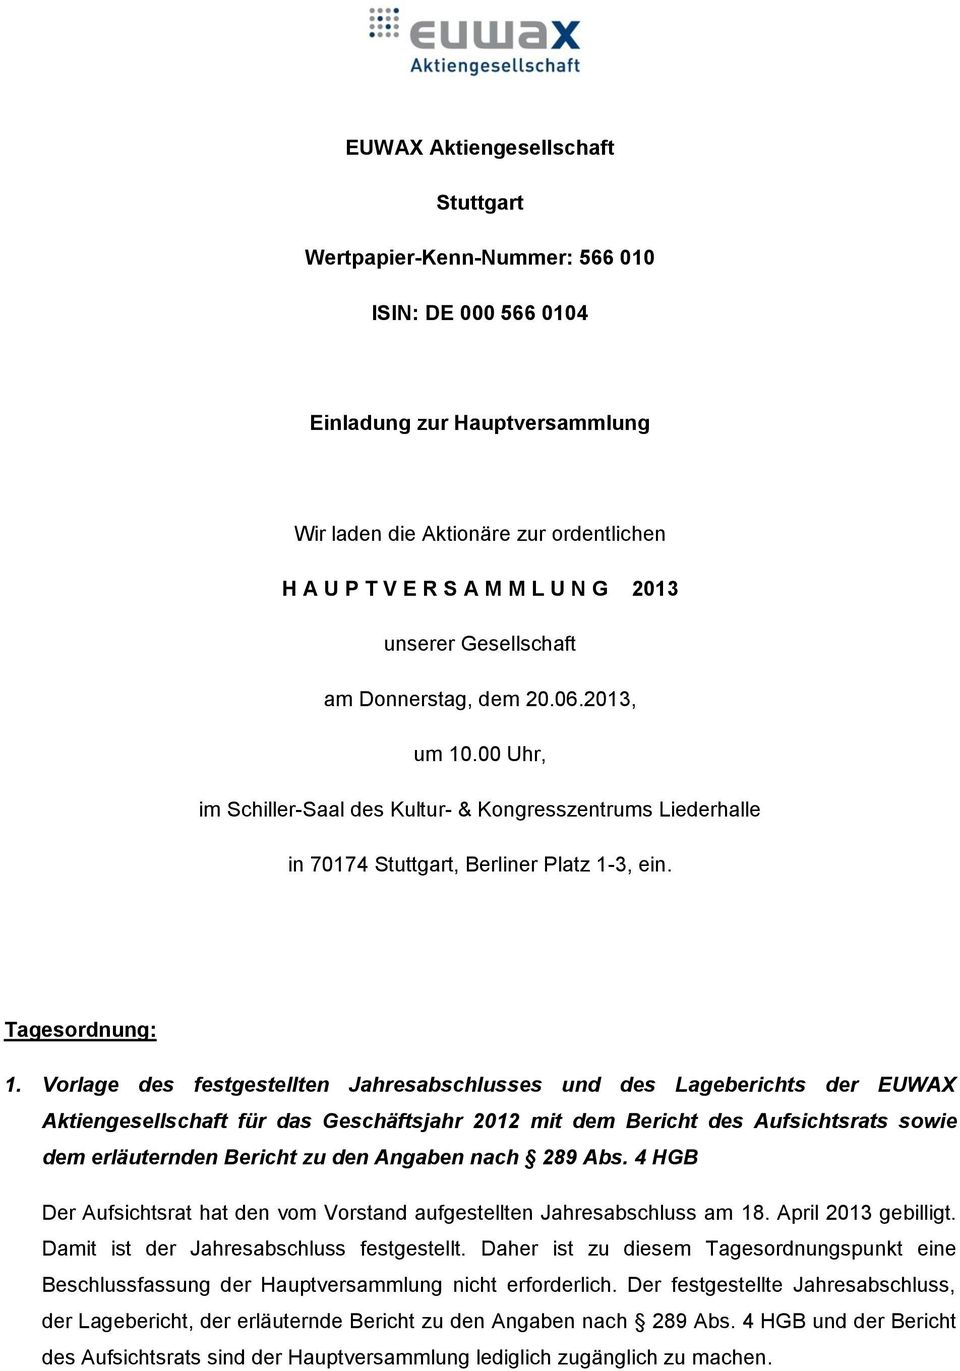 Vorlage des festgestellten Jahresabschlusses und des Lageberichts der EUWAX Aktiengesellschaft für das Geschäftsjahr 2012 mit dem Bericht des Aufsichtsrats sowie dem erläuternden Bericht zu den